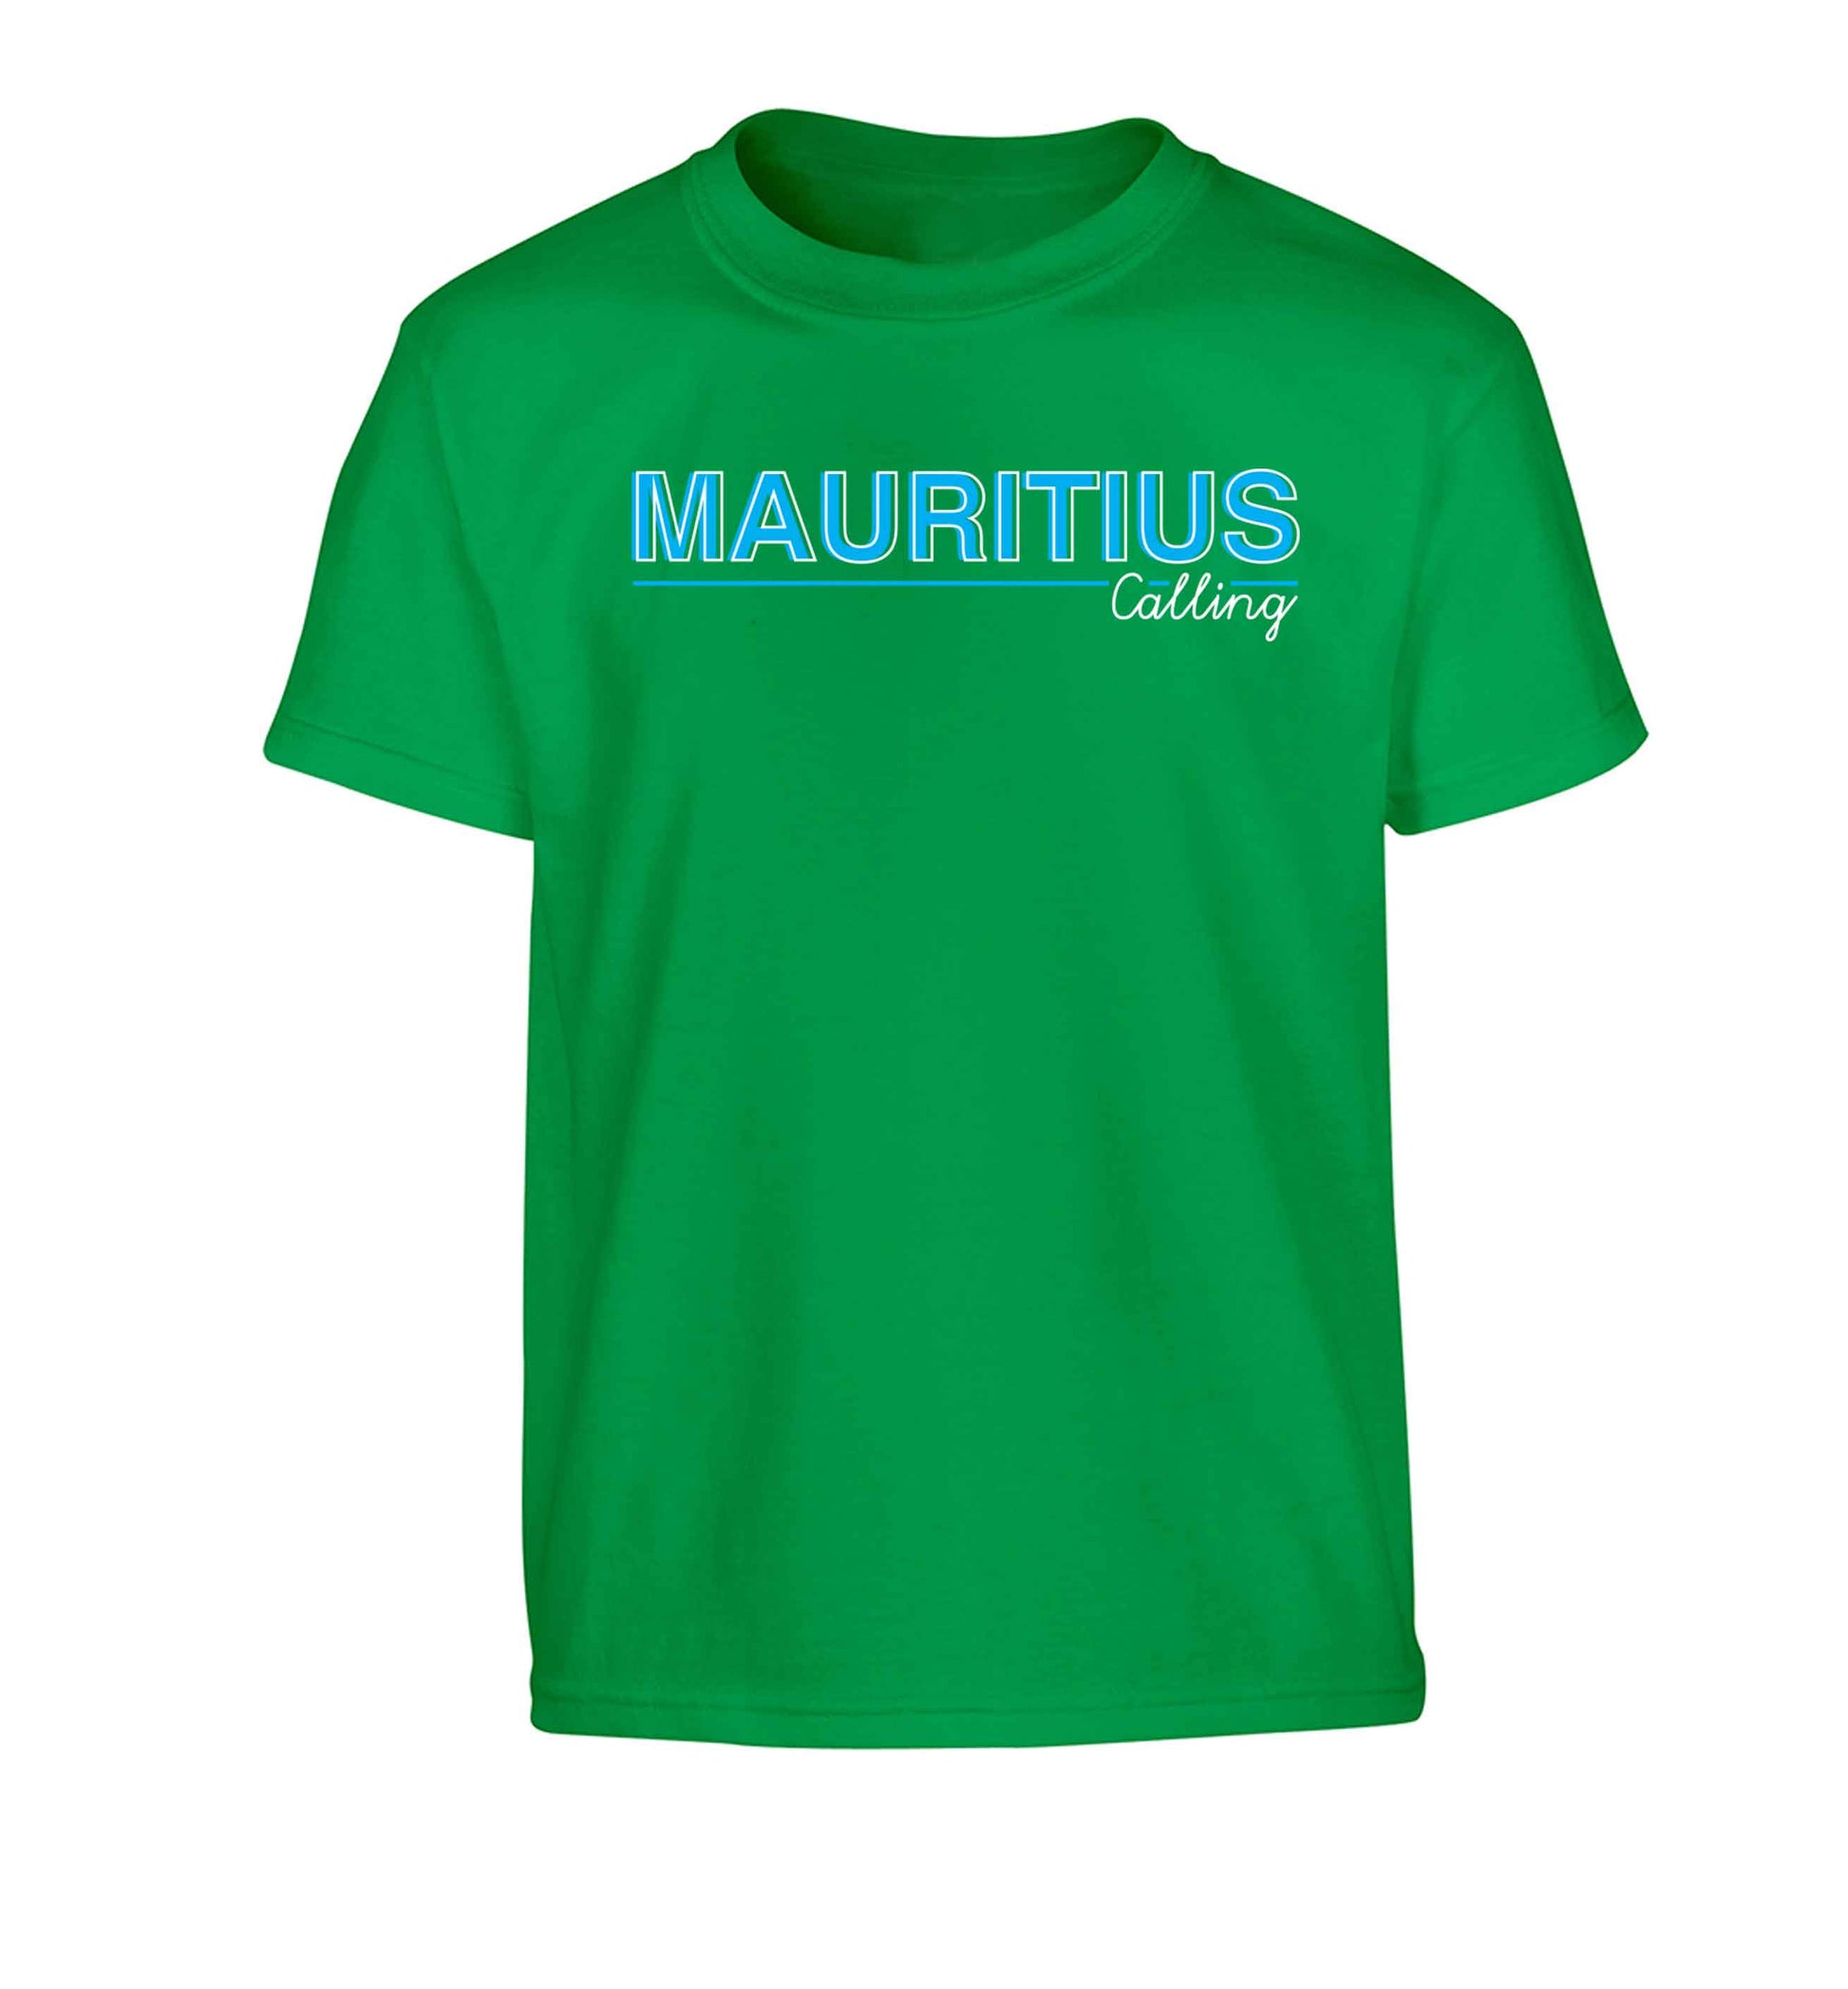 Mauritius calling Children's green Tshirt 12-13 Years